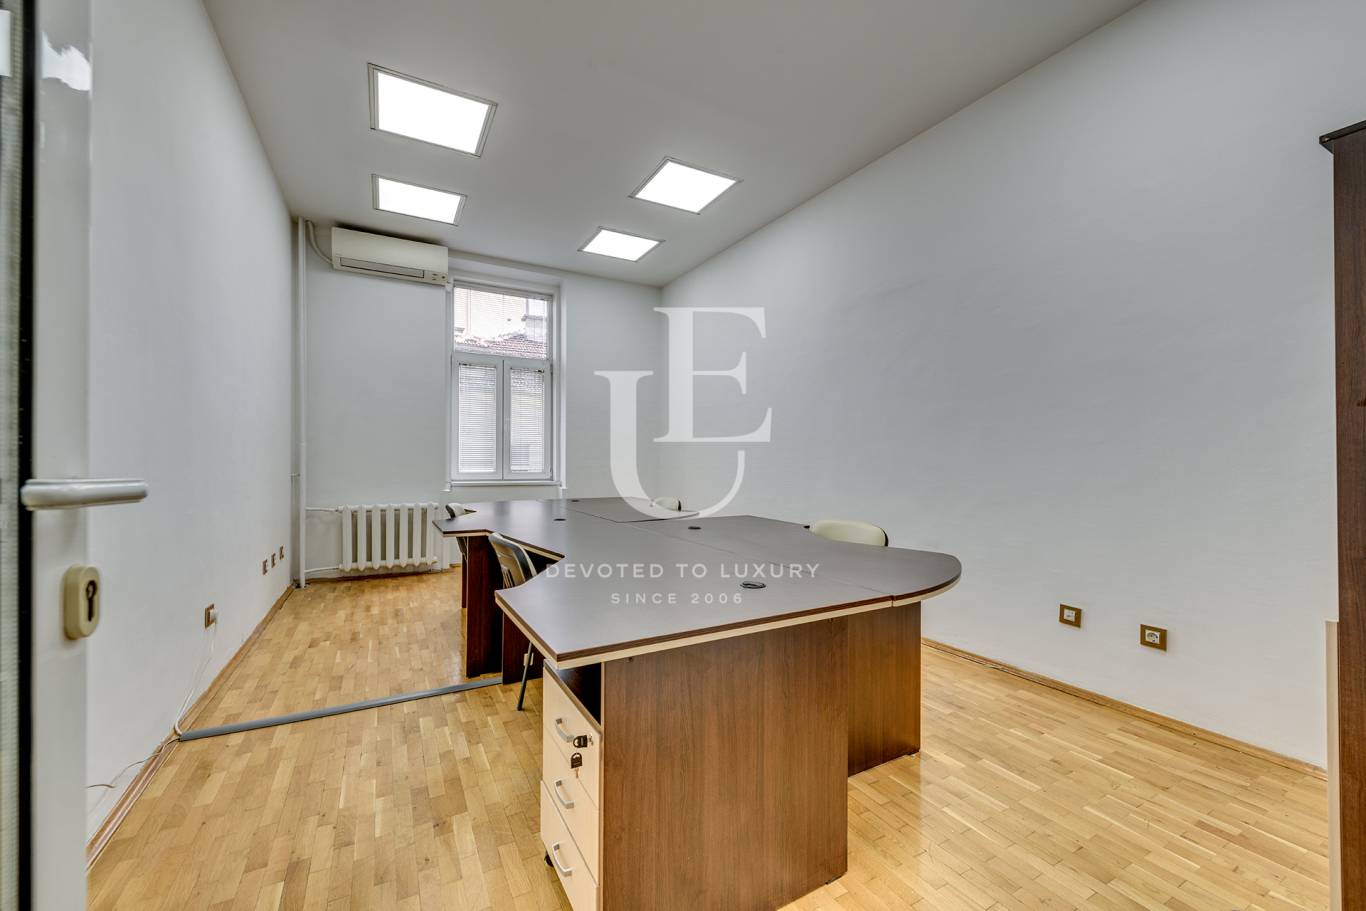 Офис под наем в София, Център - код на имота: K18525 - image 11